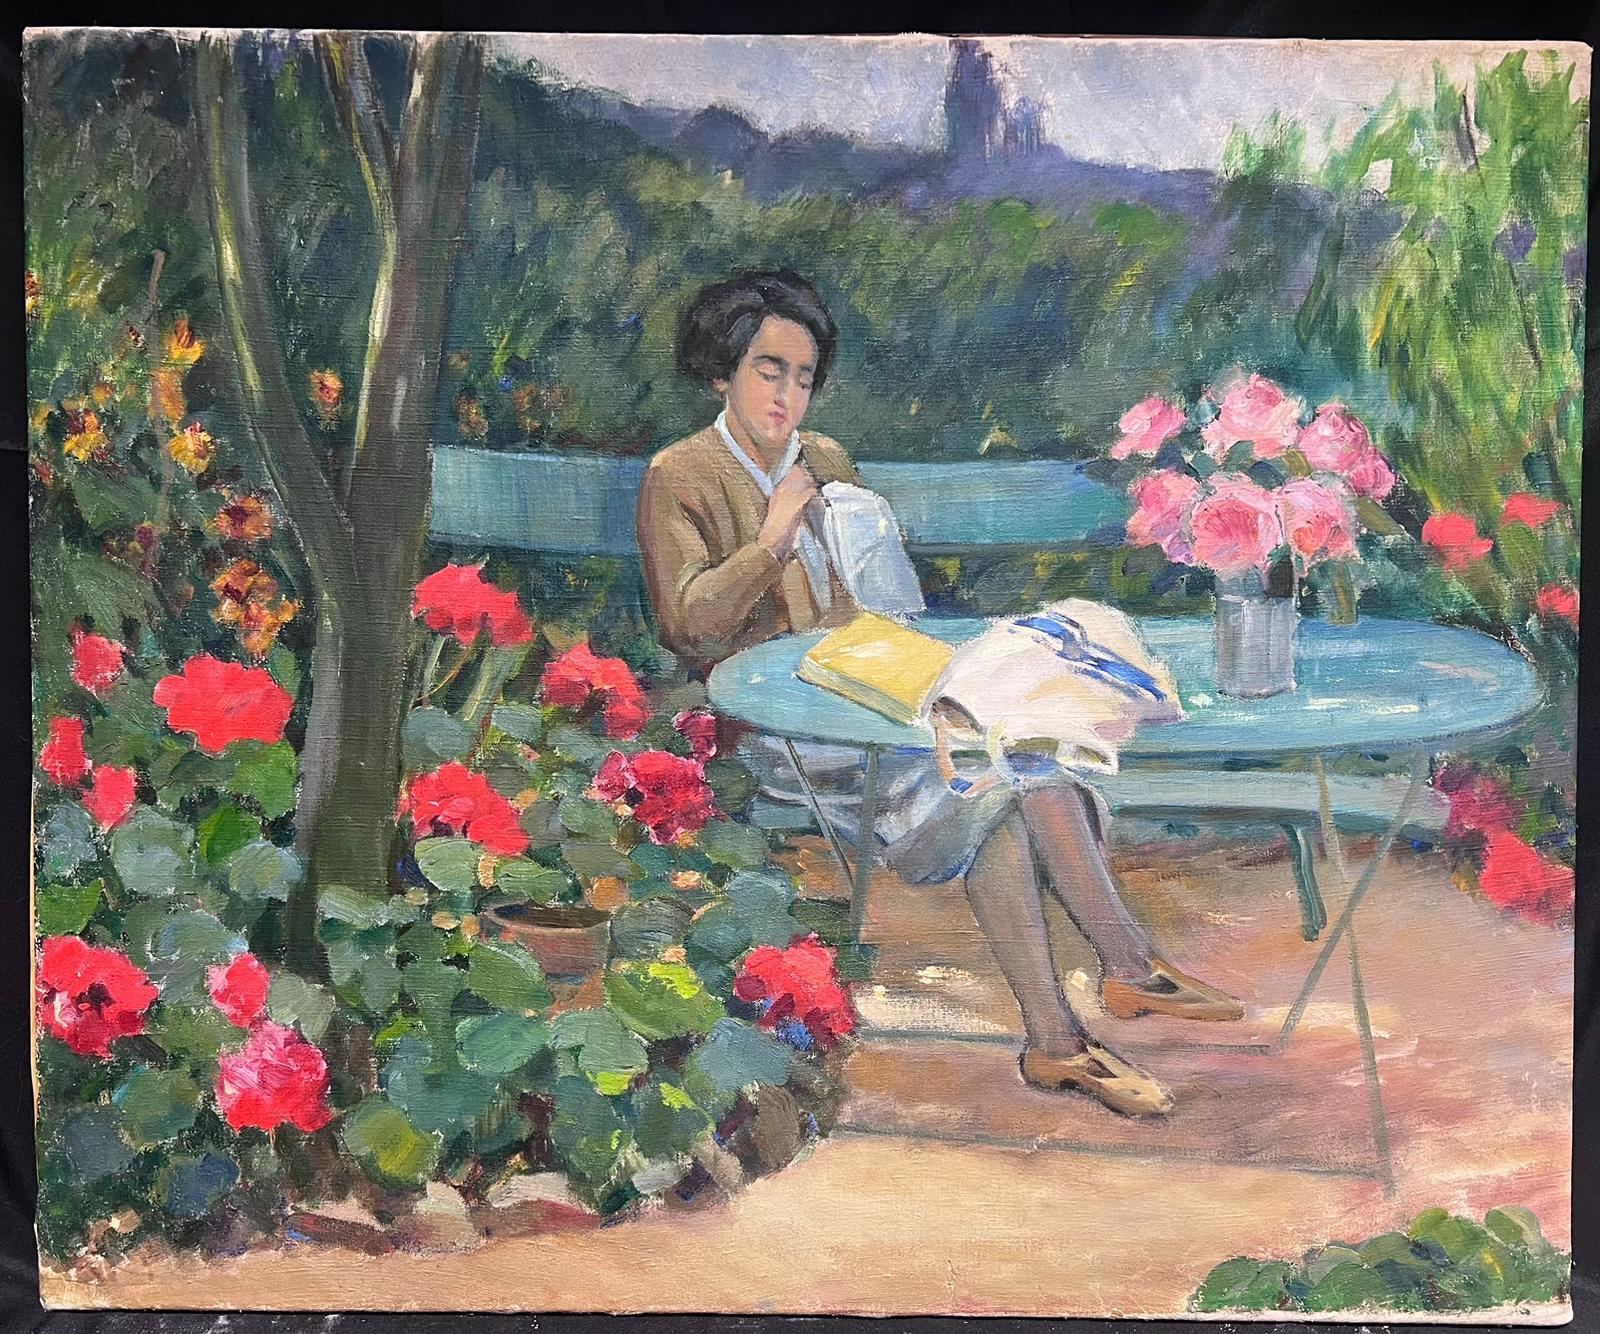 Huile impressionniste française du milieu du 20e siècle représentant une femme dans un joli jardin de fleurs sur banc - Painting de Louise Alix